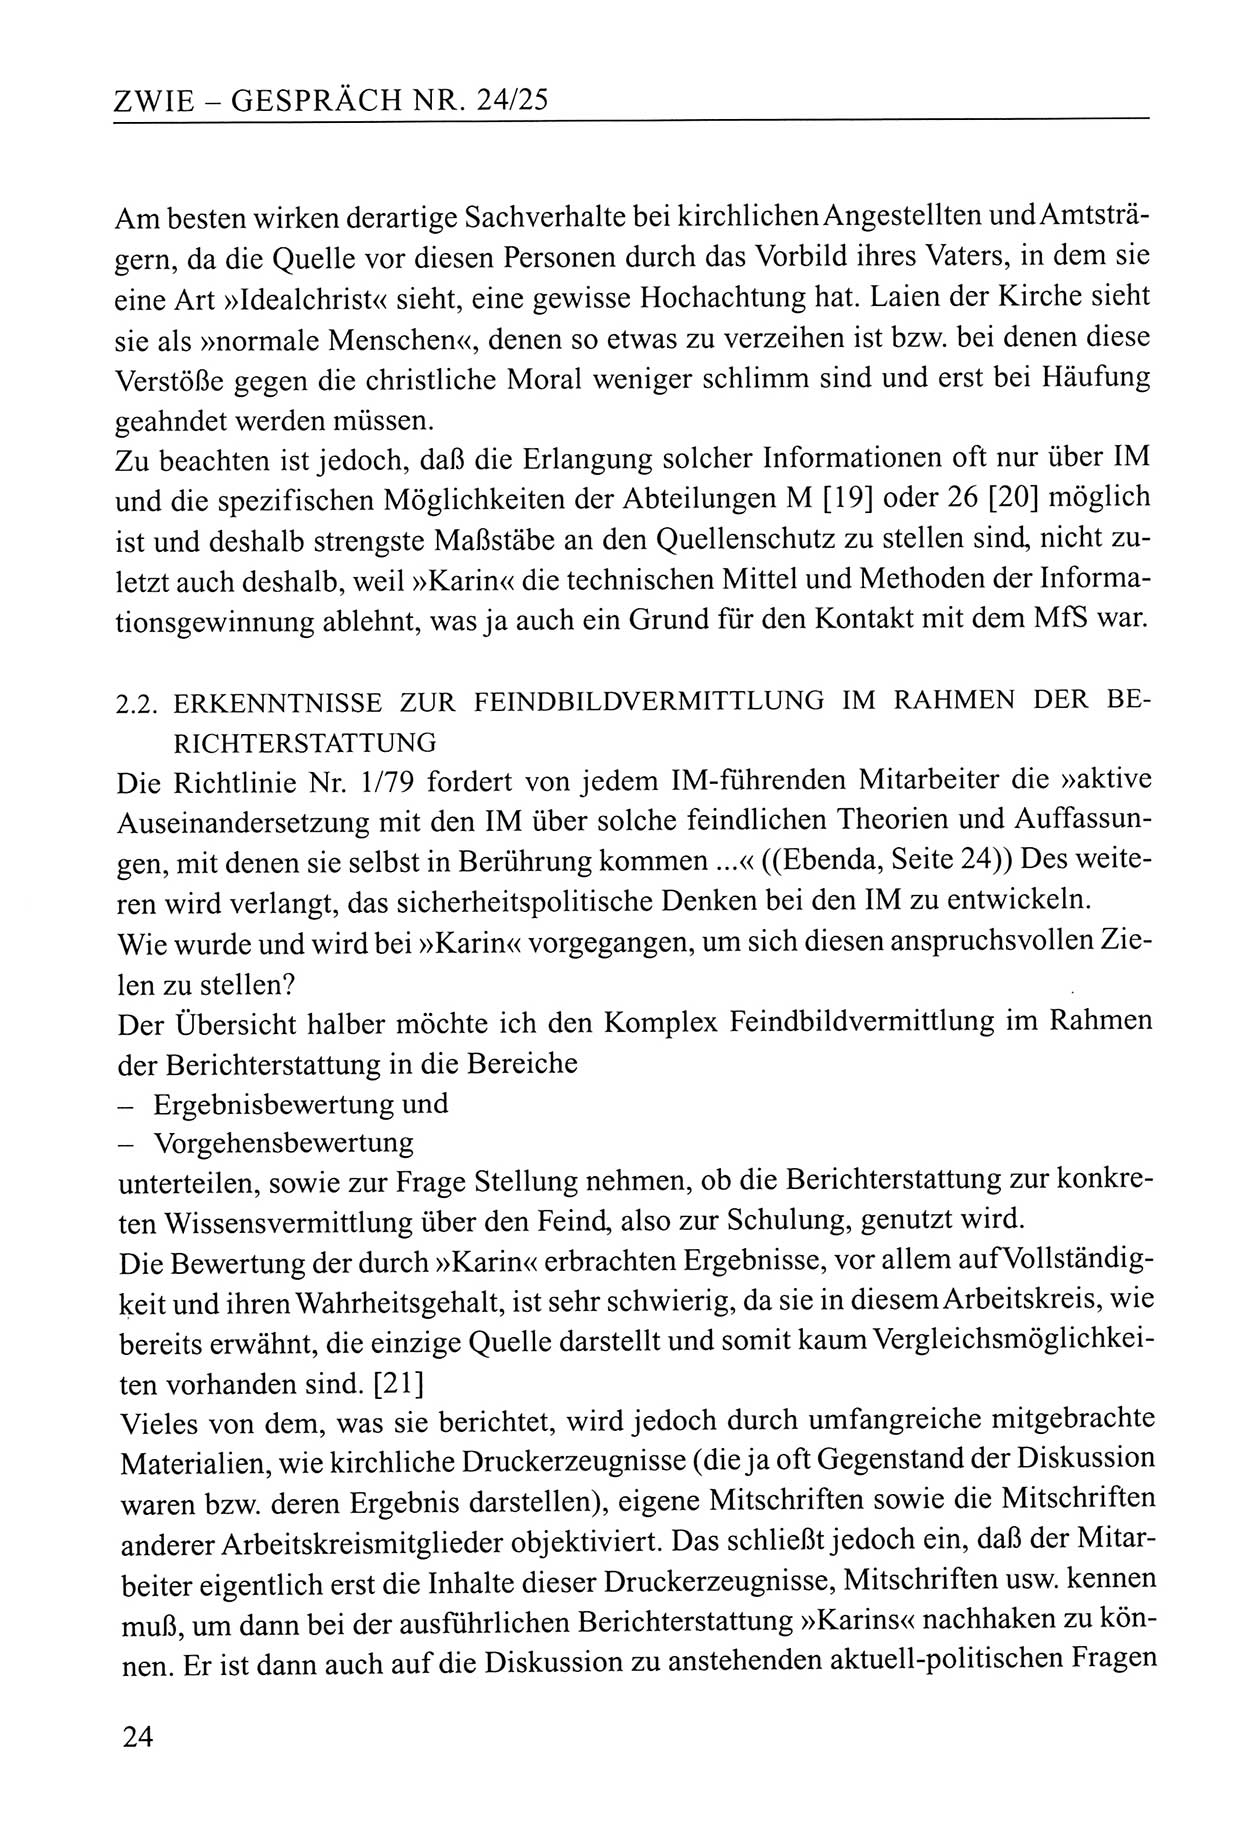 Zwie-Gespräch, Beiträge zum Umgang mit der Staatssicherheits-Vergangenheit [Deutsche Demokratische Republik (DDR)], Ausgabe Nr. 24/25, Berlin 1994, Seite 24 (Zwie-Gespr. Ausg. 24/25 1994, S. 24)